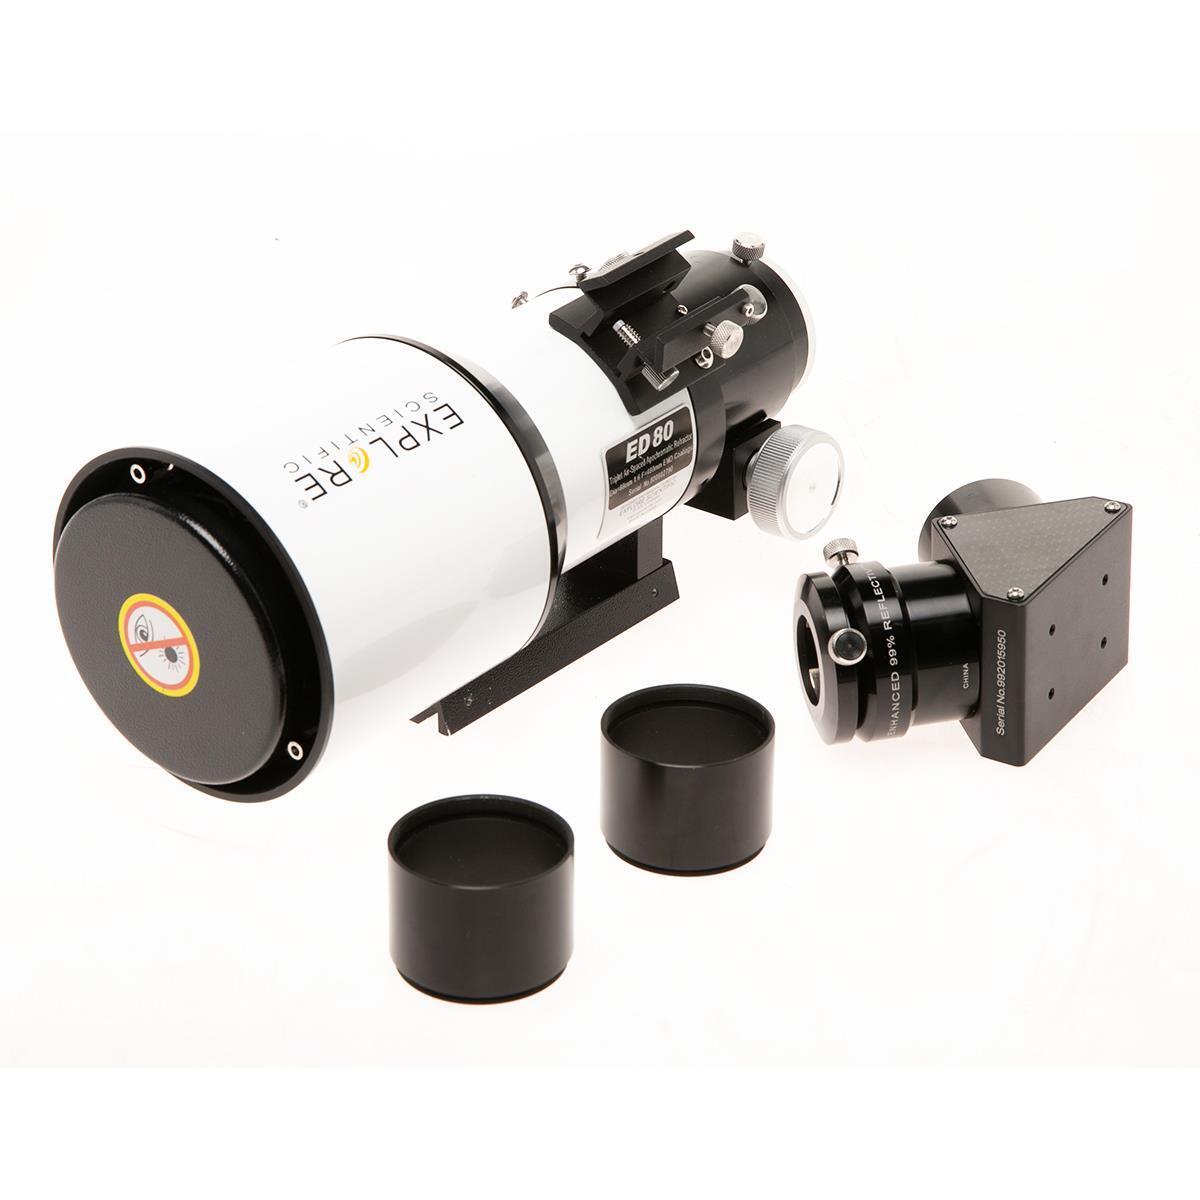 Explore Scientific ED80 80mm f/6 Essential Triplet Apo Refractor Telescope